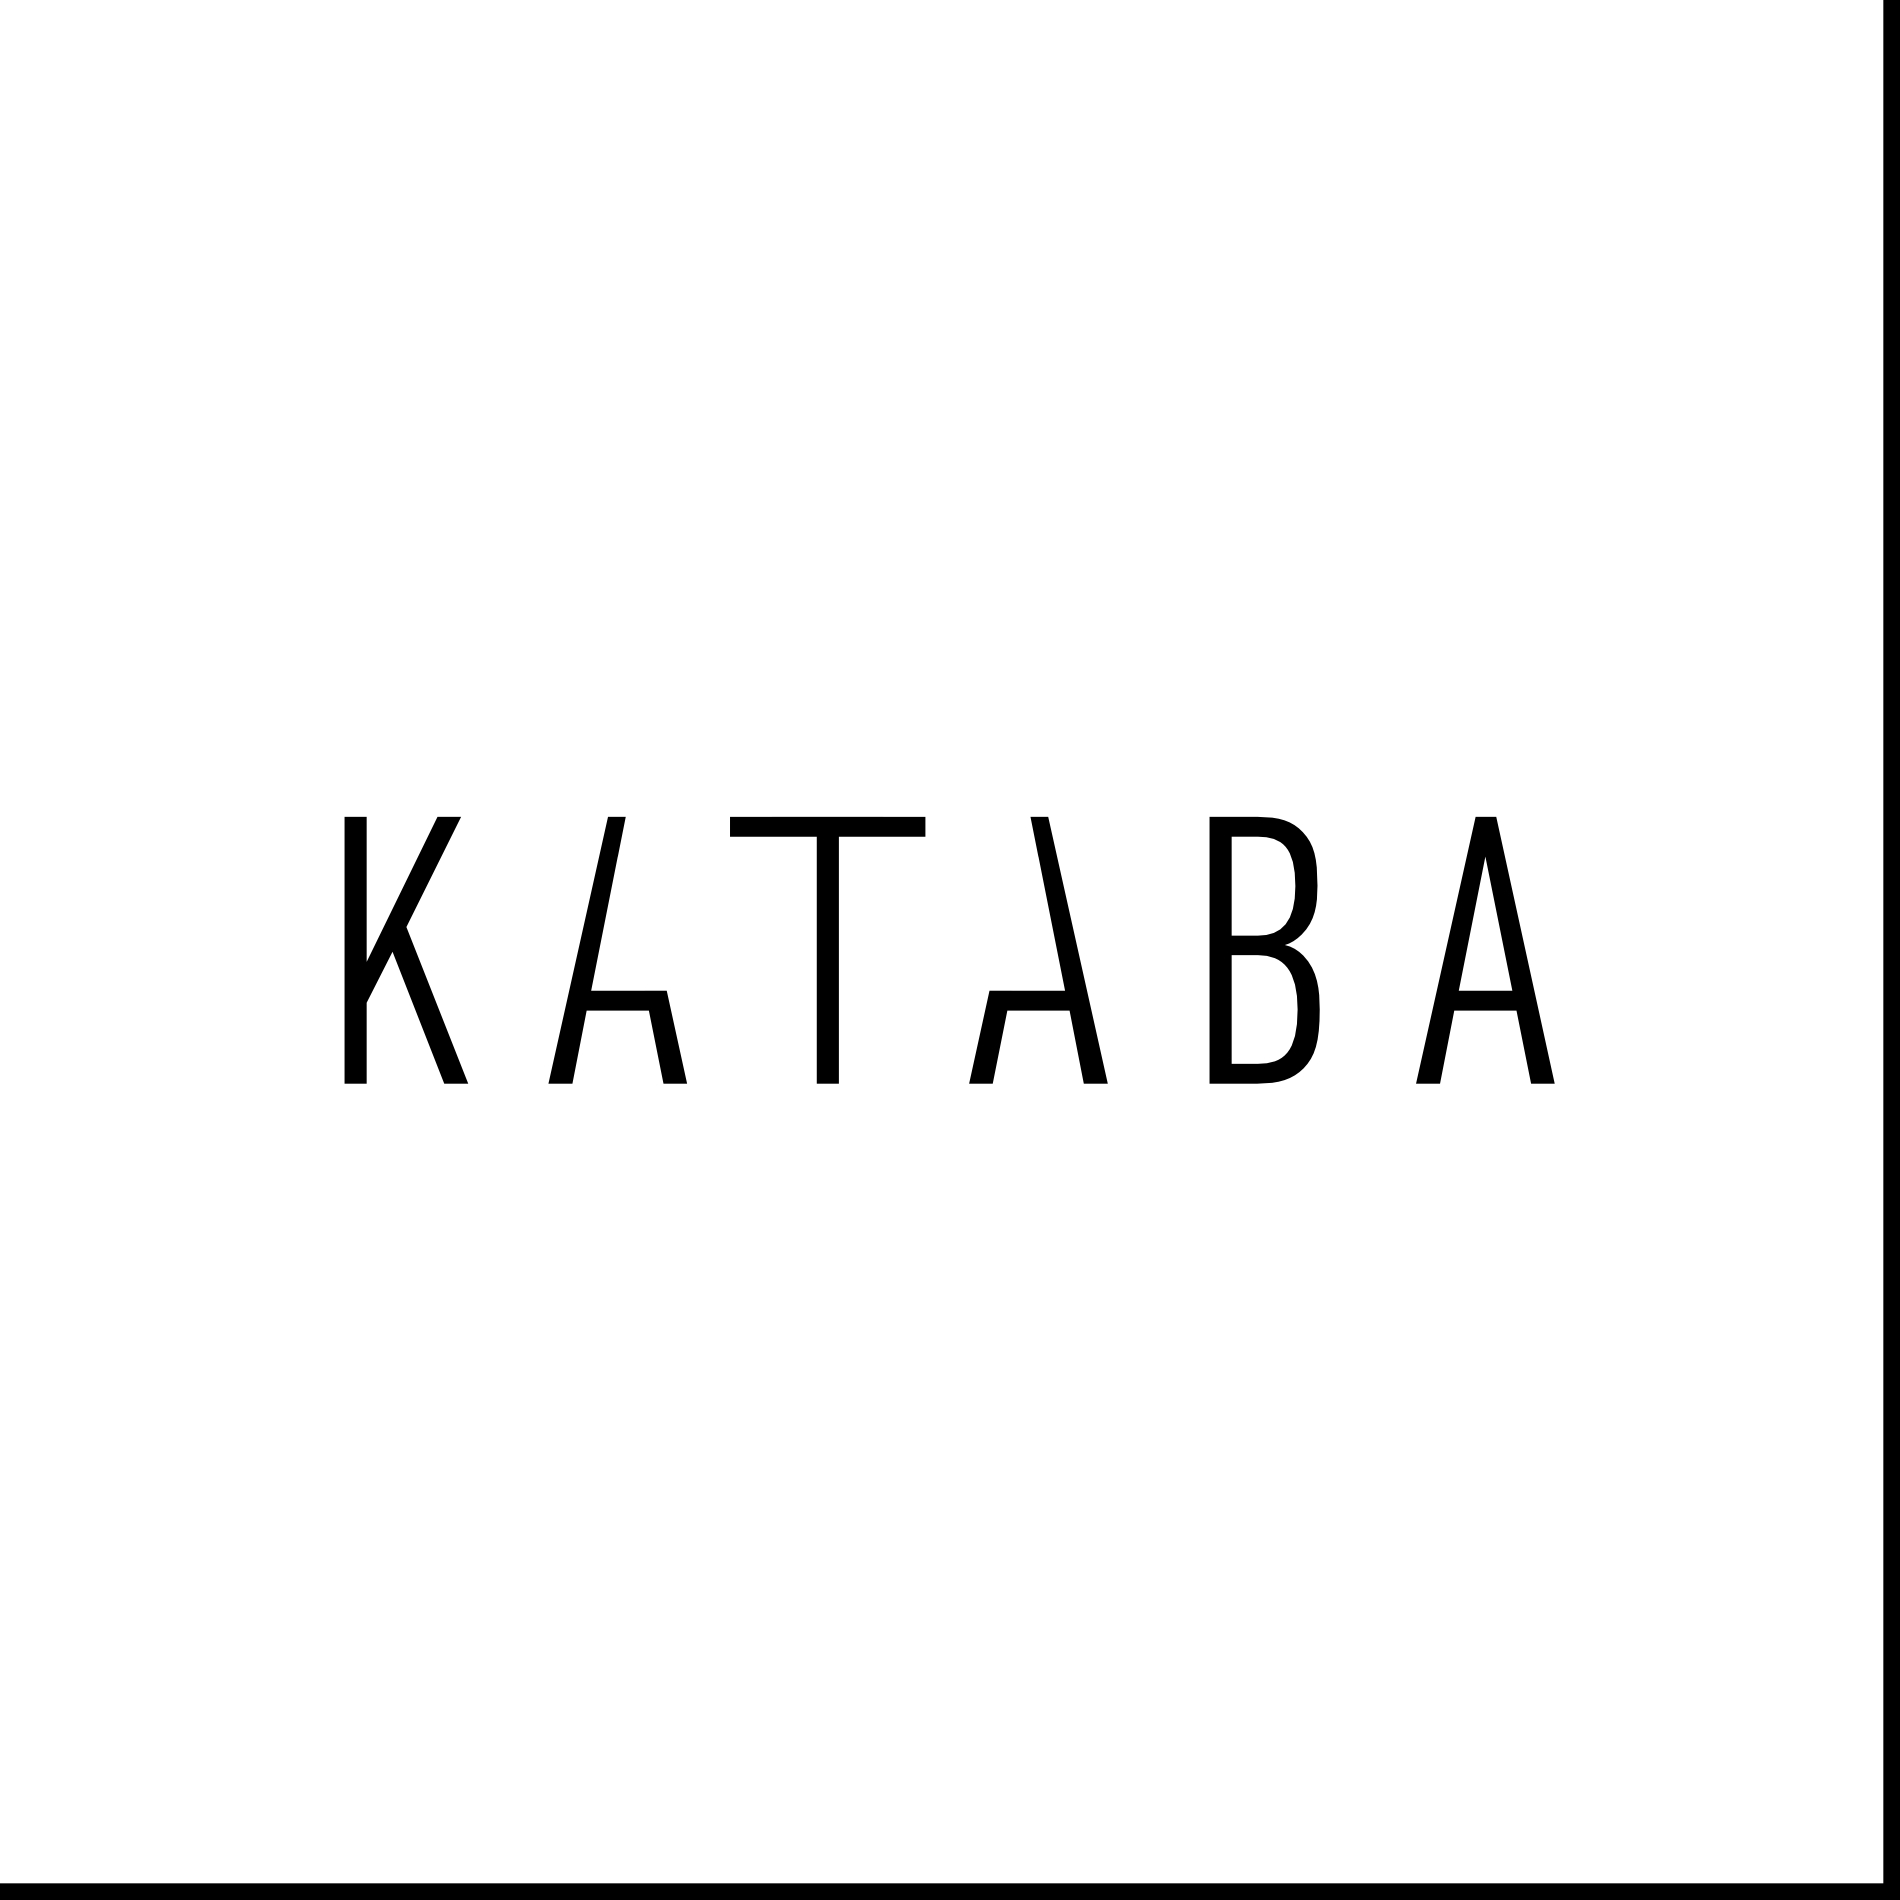 Kataba